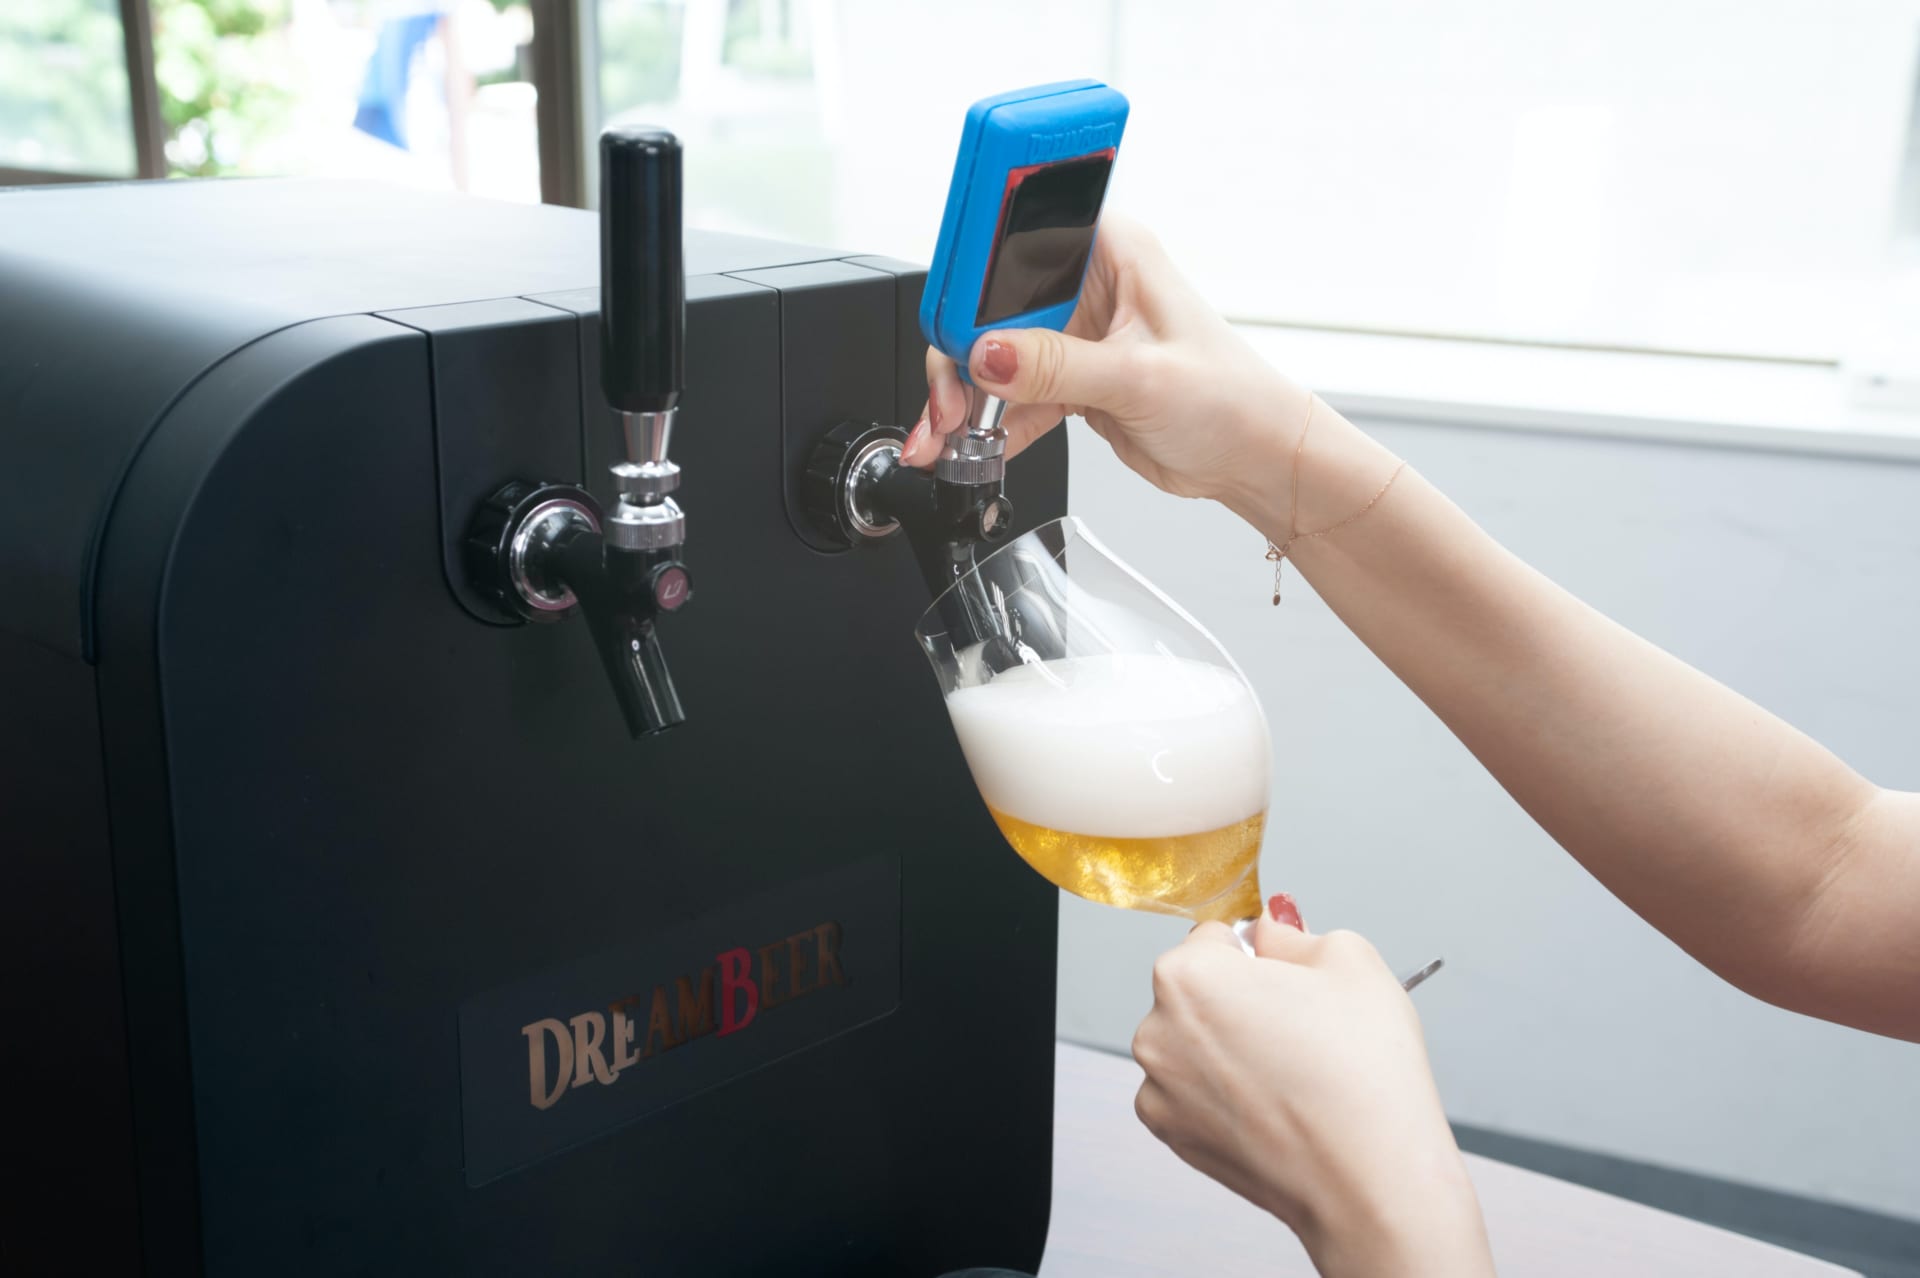 全国各地のビールが自宅で楽しめる ビールサーバー「DREAM BEER」登場